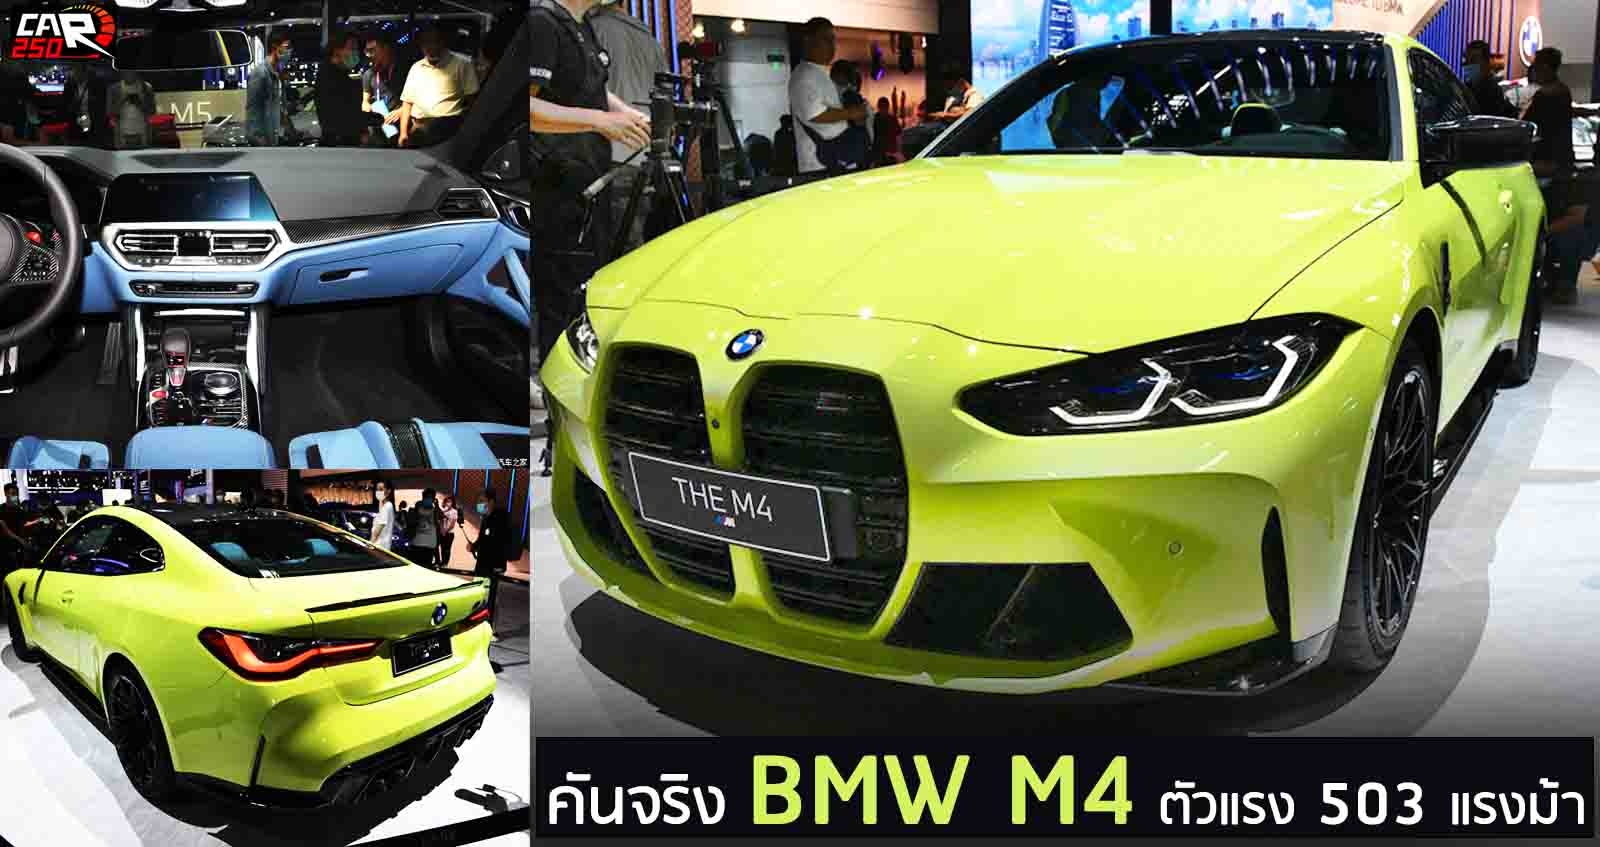 คันจริง NEW BMW M4 ตัวแรง 503 แรงม้า ในจีน